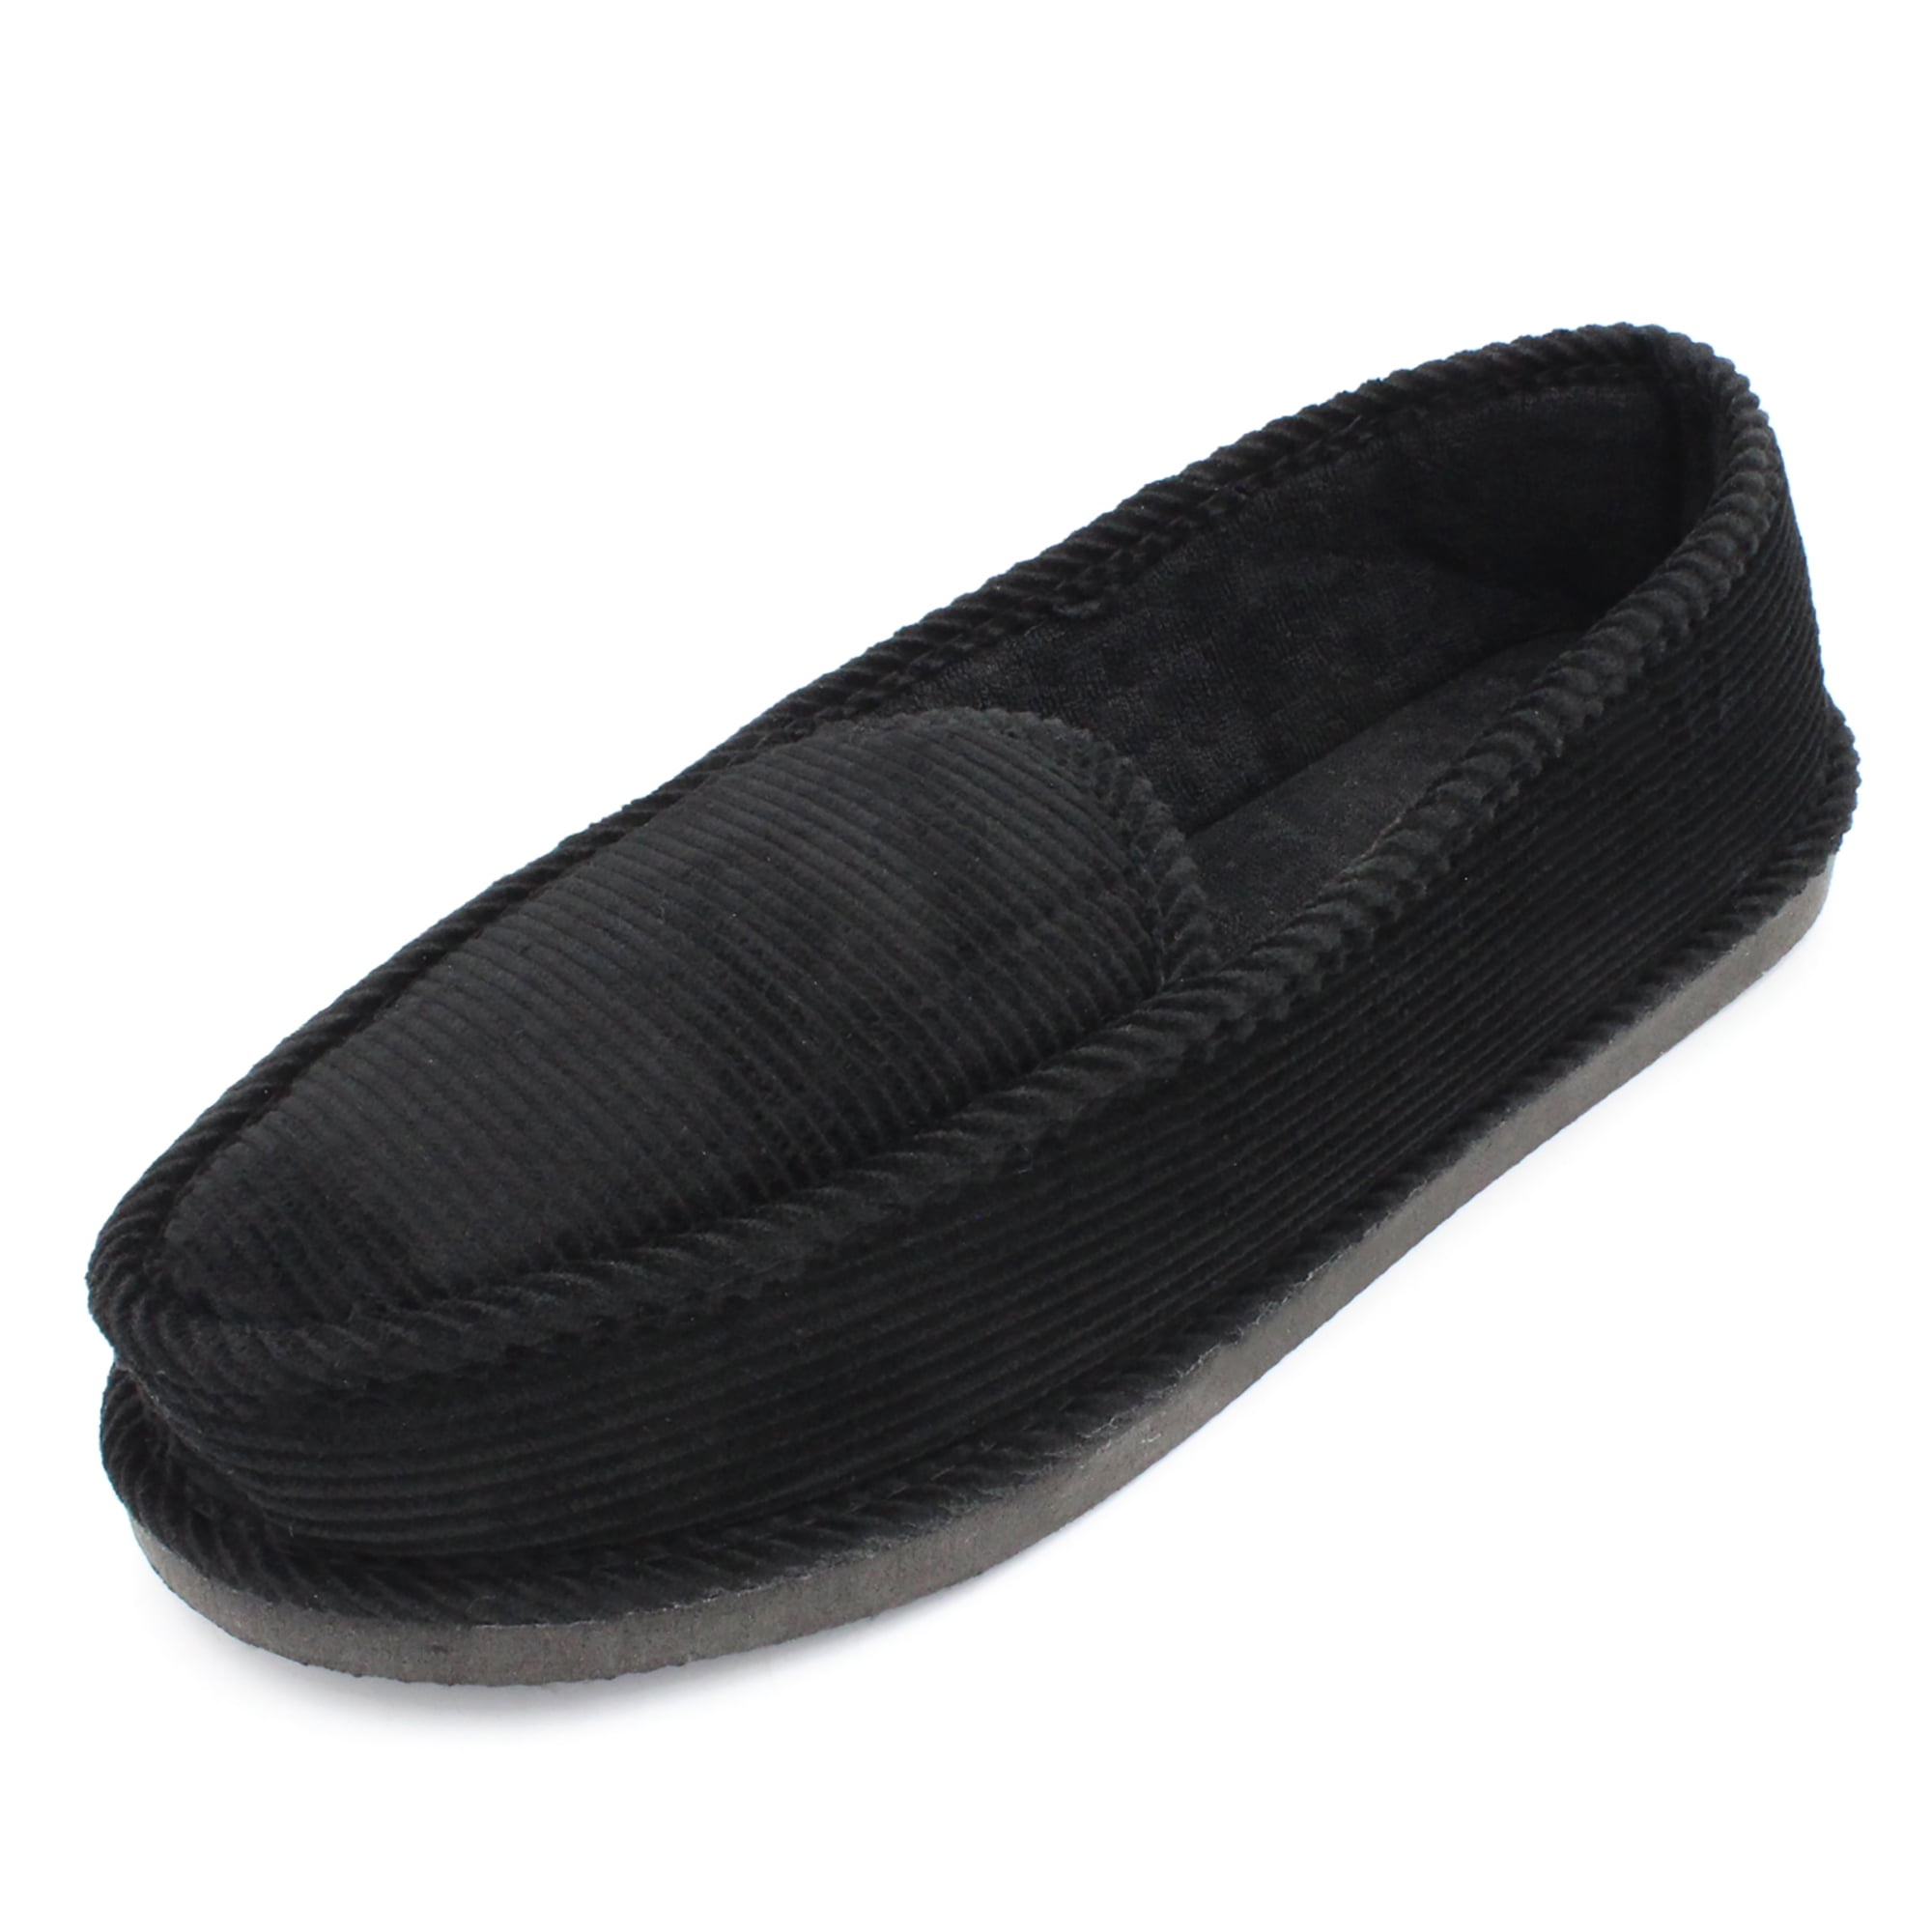 Buy Mochi Men Black Formal Slippers Online | SKU: 16-9103-11-40 – Mochi  Shoes